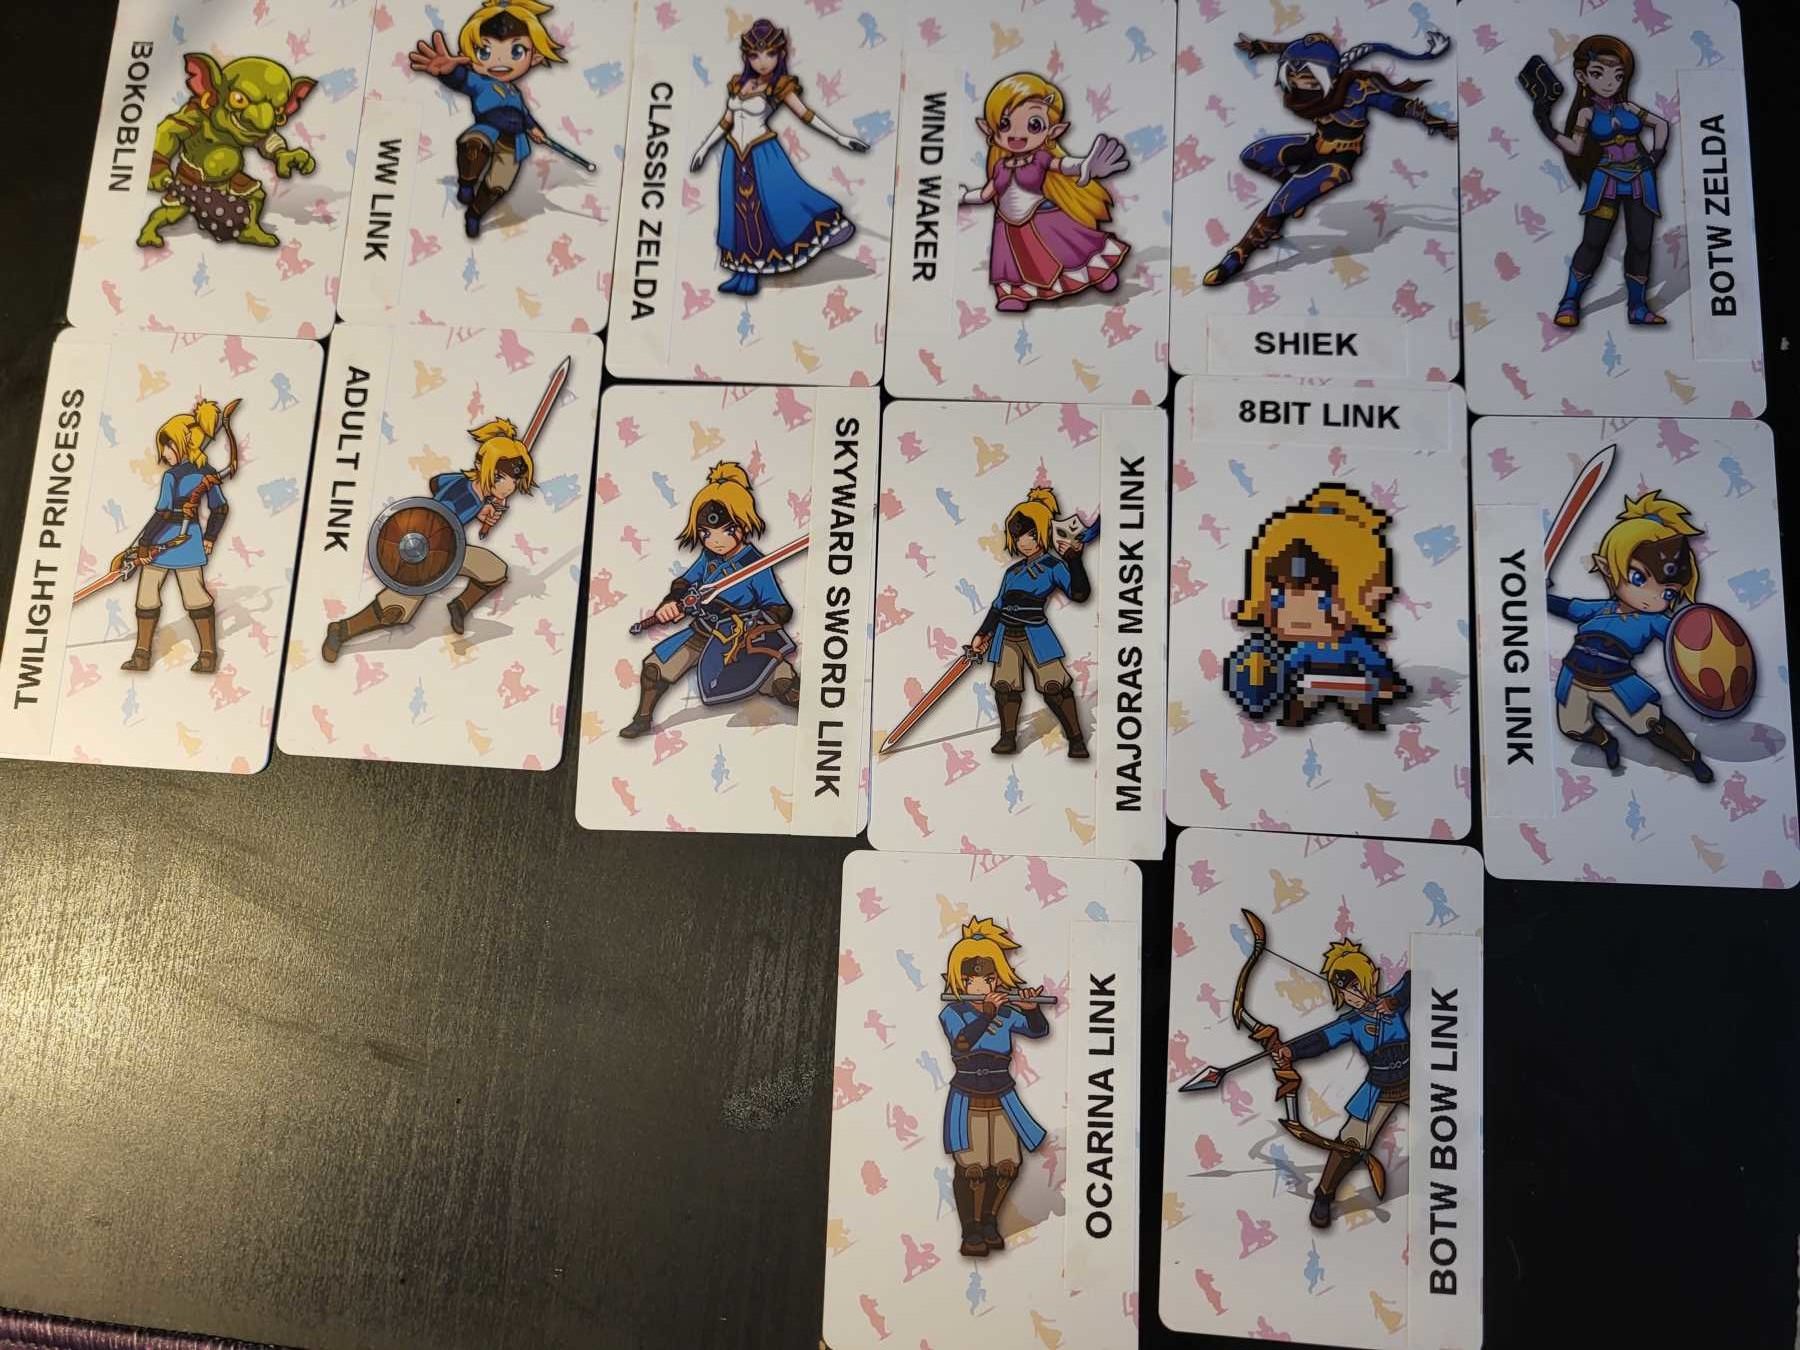 zelda amiibo cards with correct figure names